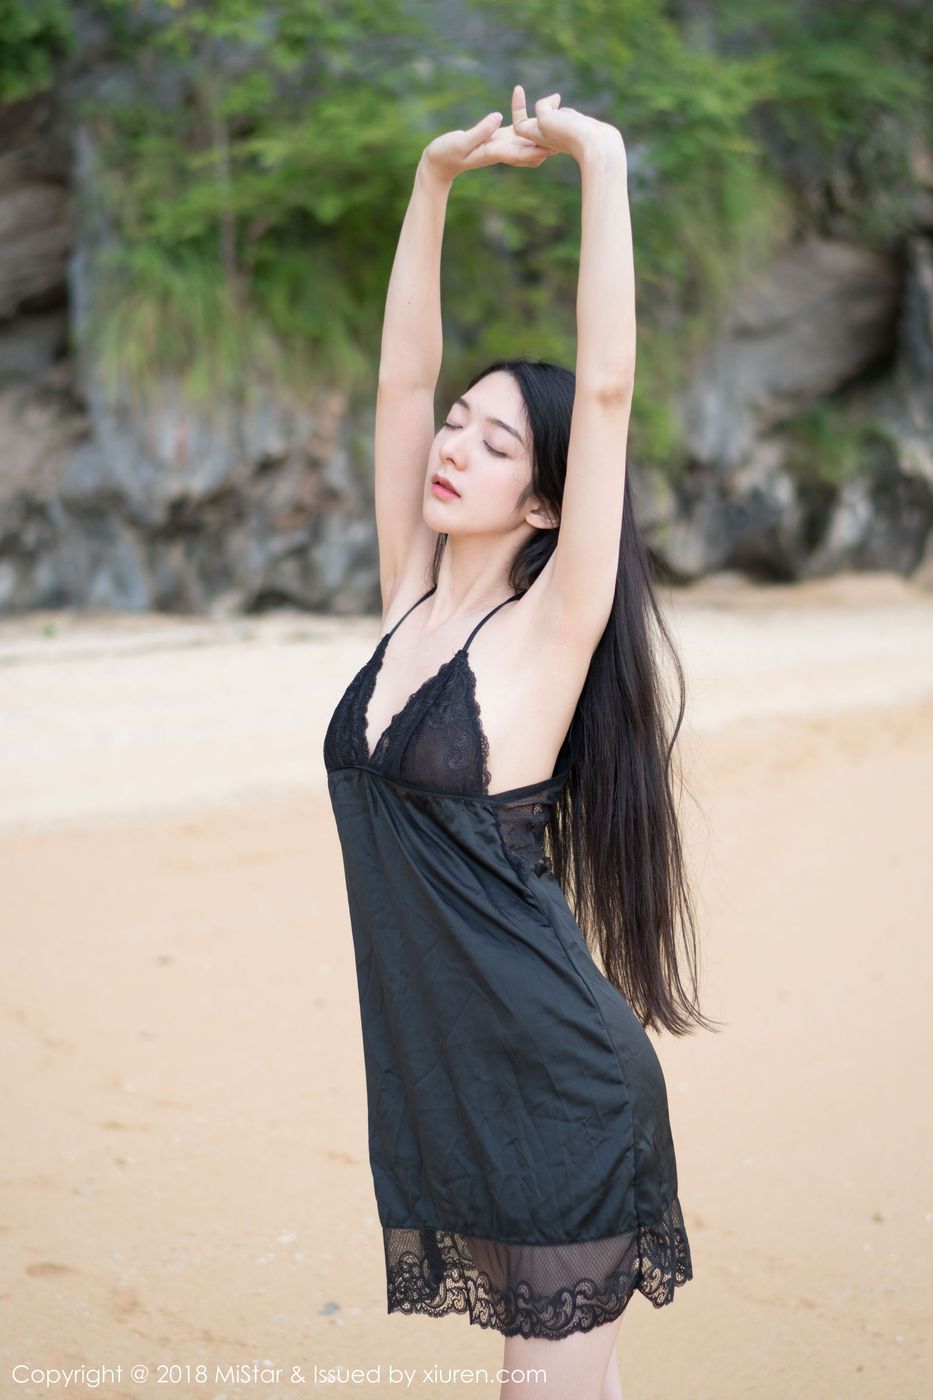 魅妍社性感女神Angela小热巴学生装沙滩制服诱惑甲米旅拍